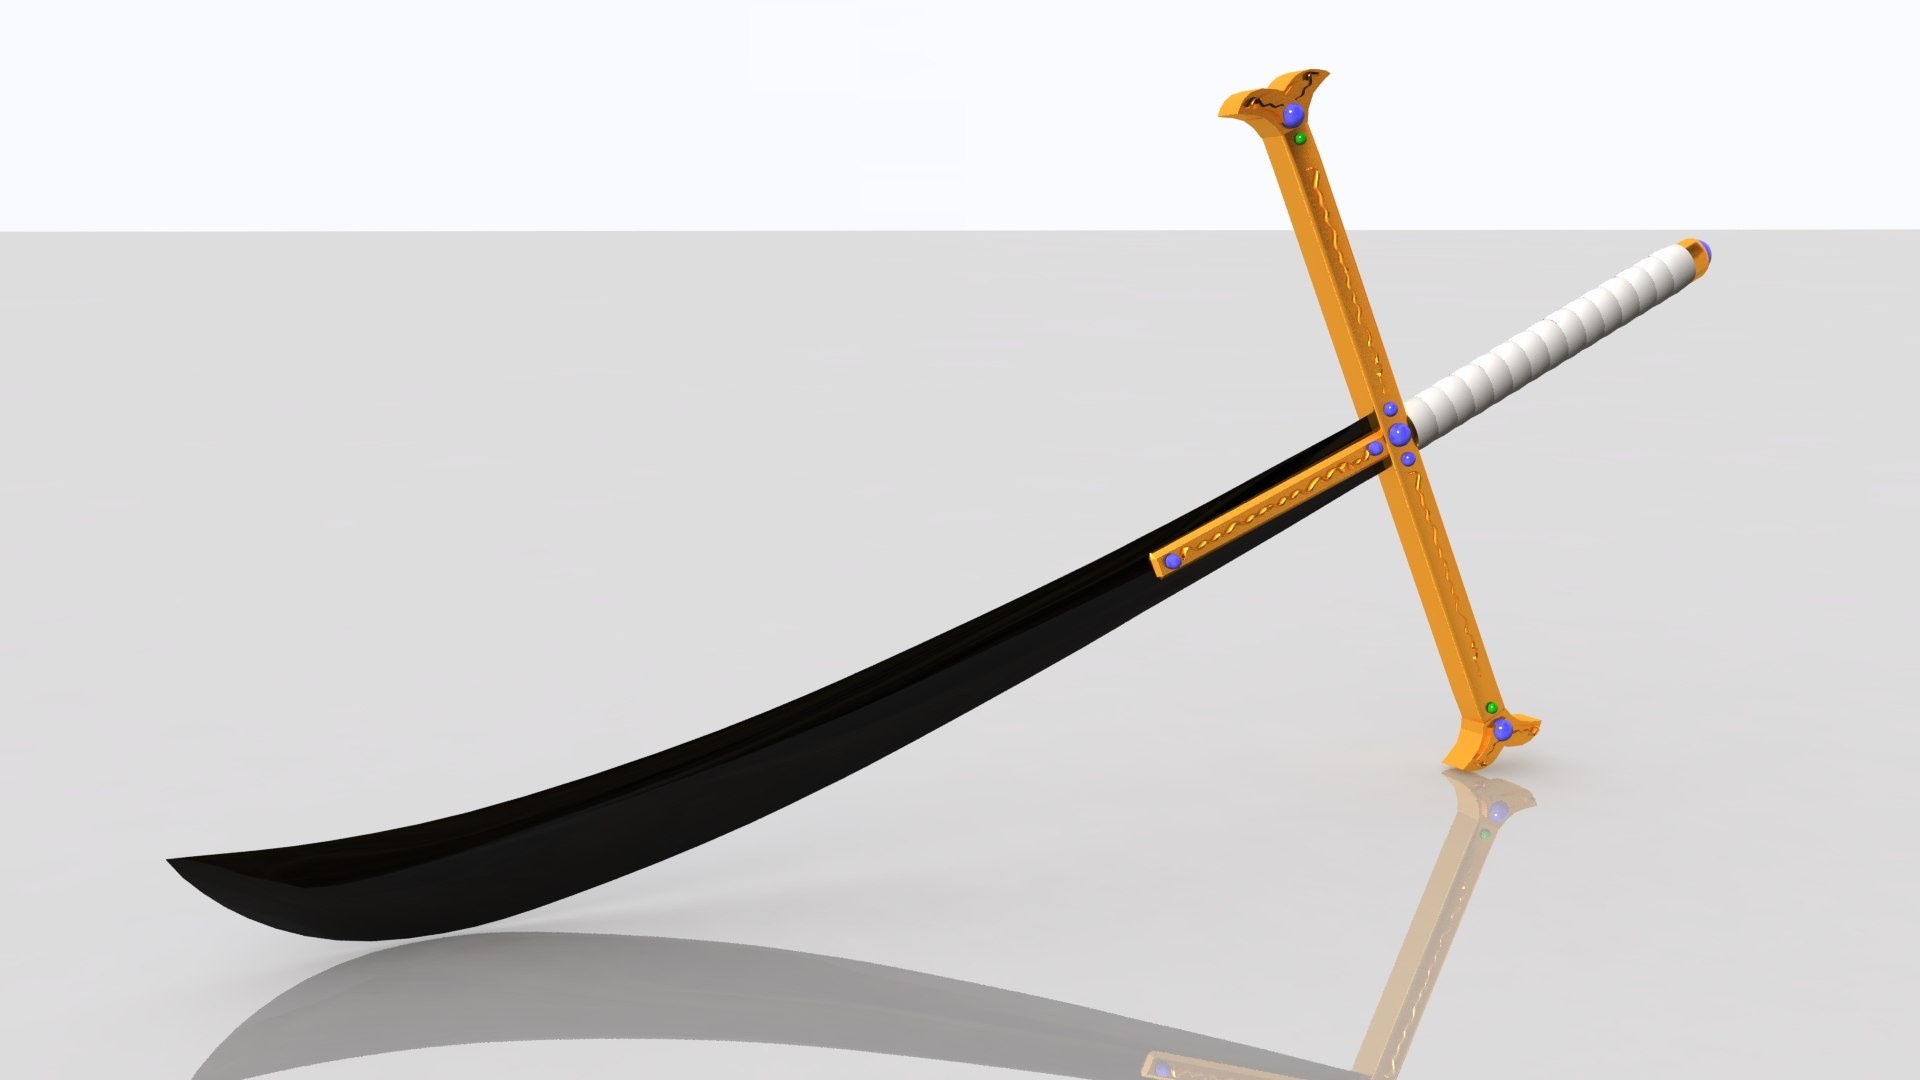 Kokuto yoru (espada do mihawk) Modelo 3D - TurboSquid 1191014